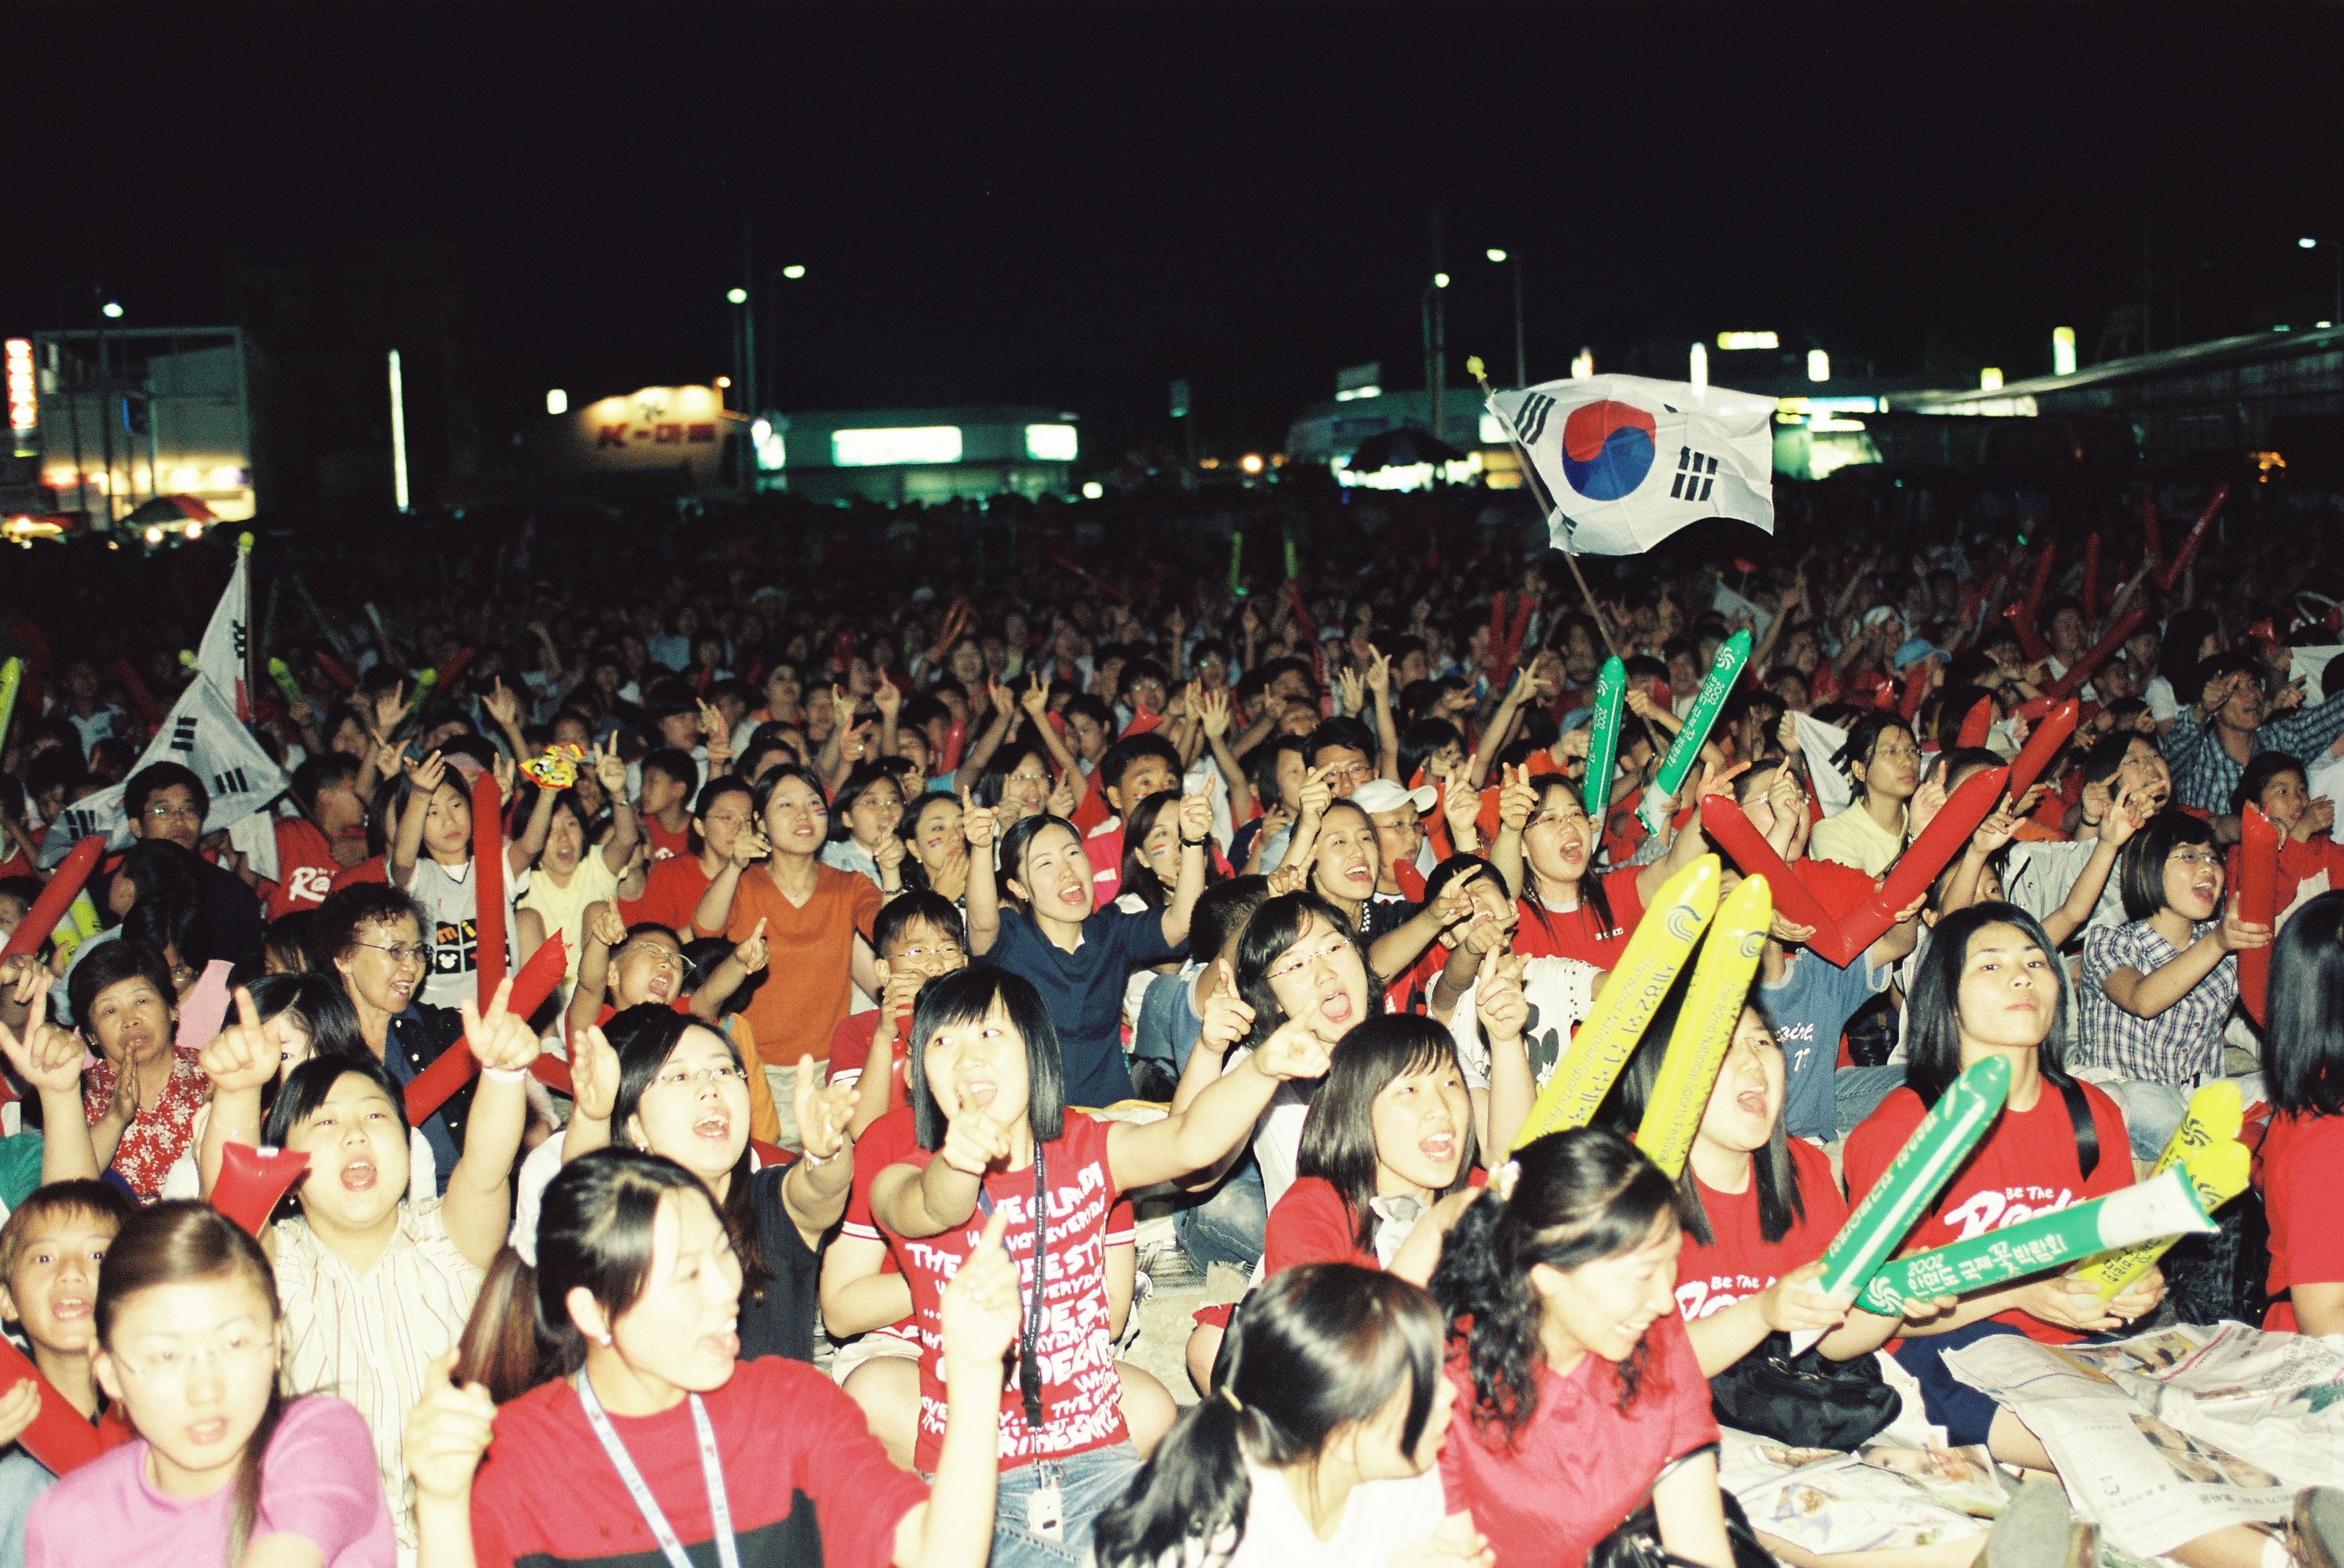 사진자료(2000년대)/2002/2002 월드컵 한국 VS 포르투갈 응원단 0/